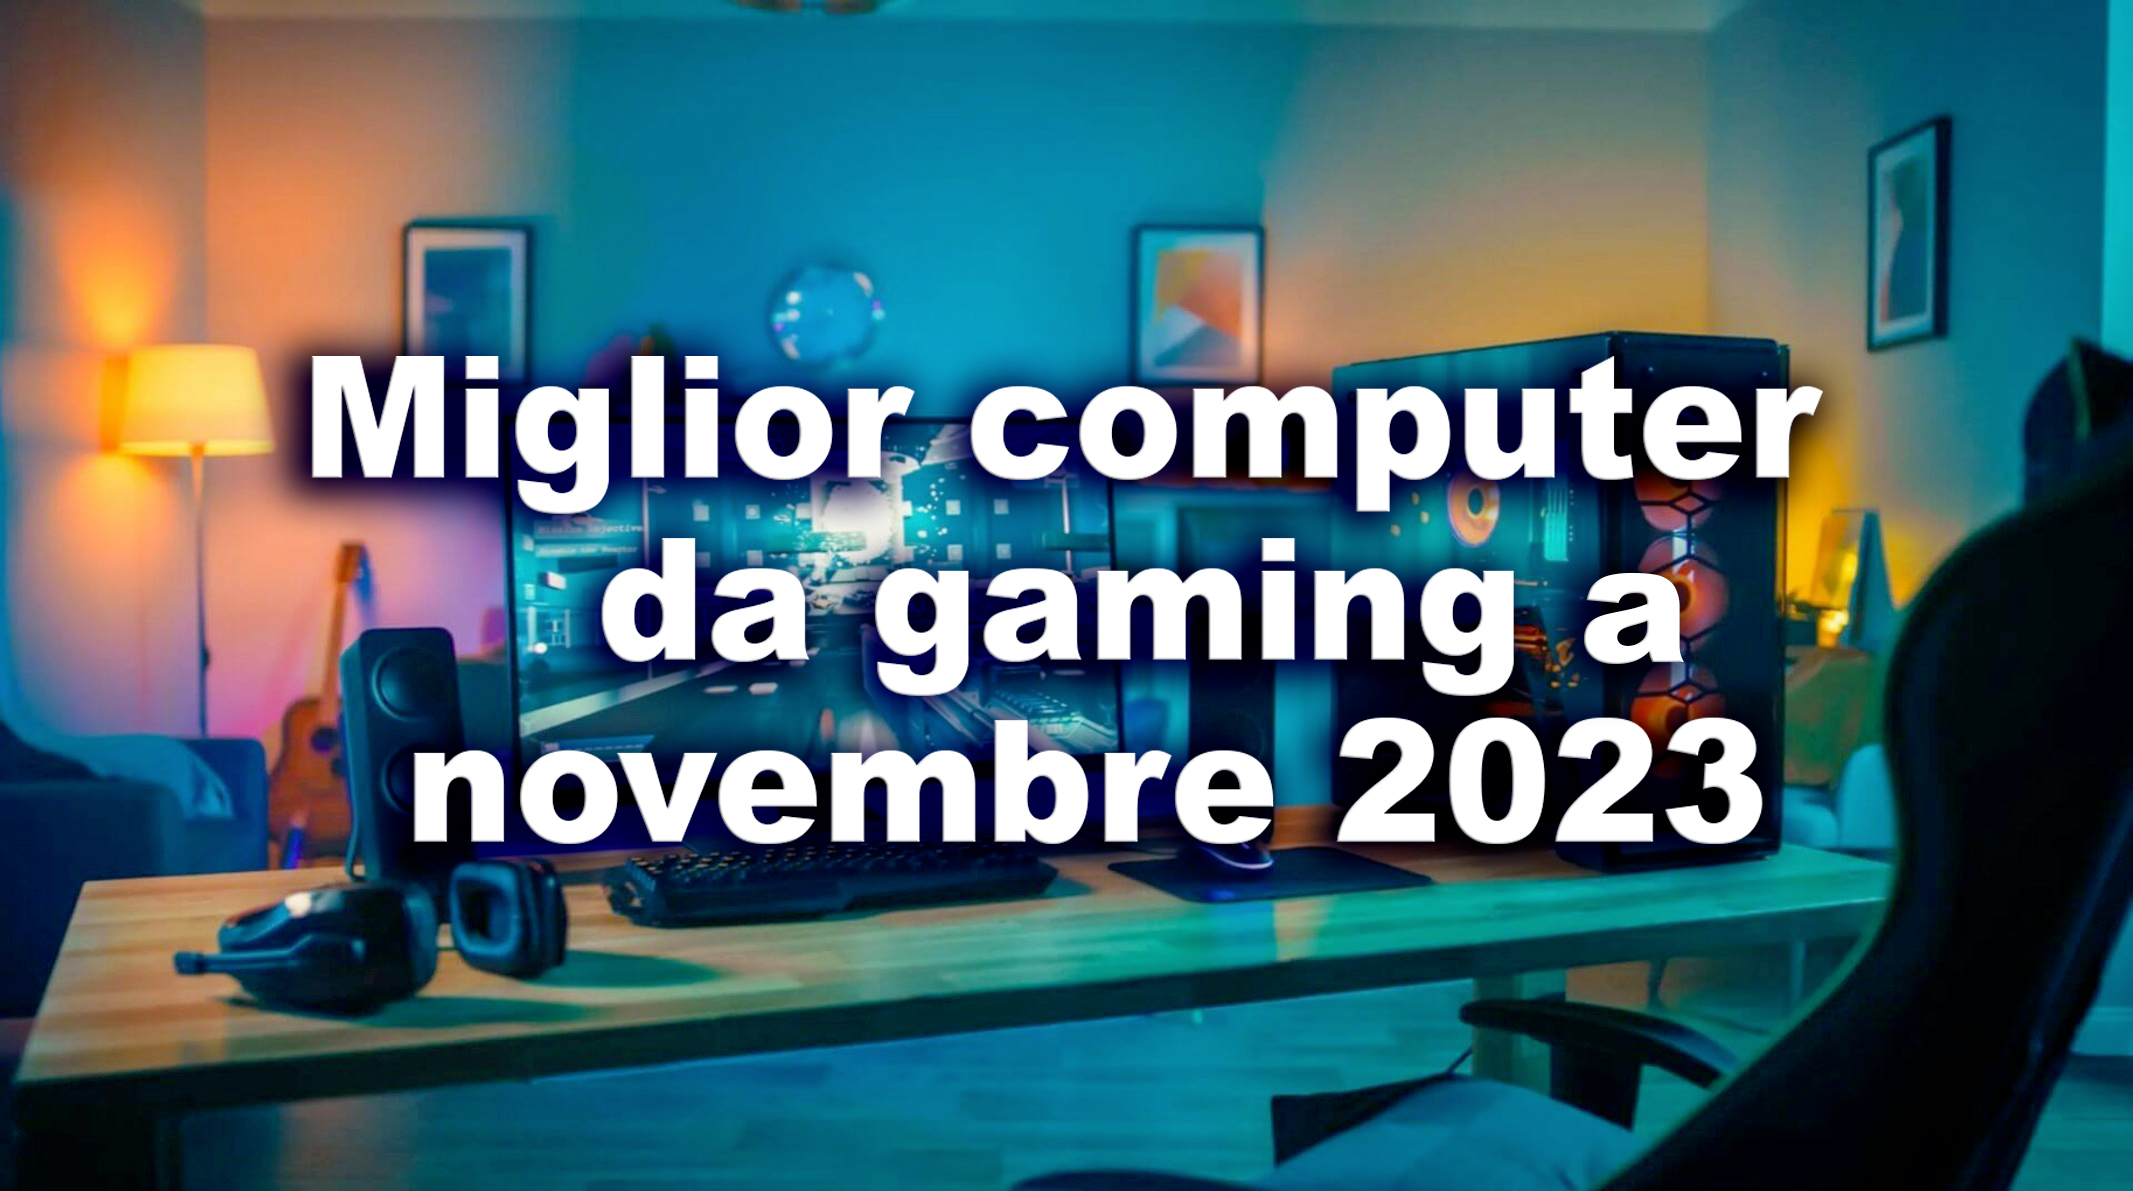 Miglior computer da gaming novembre 2023